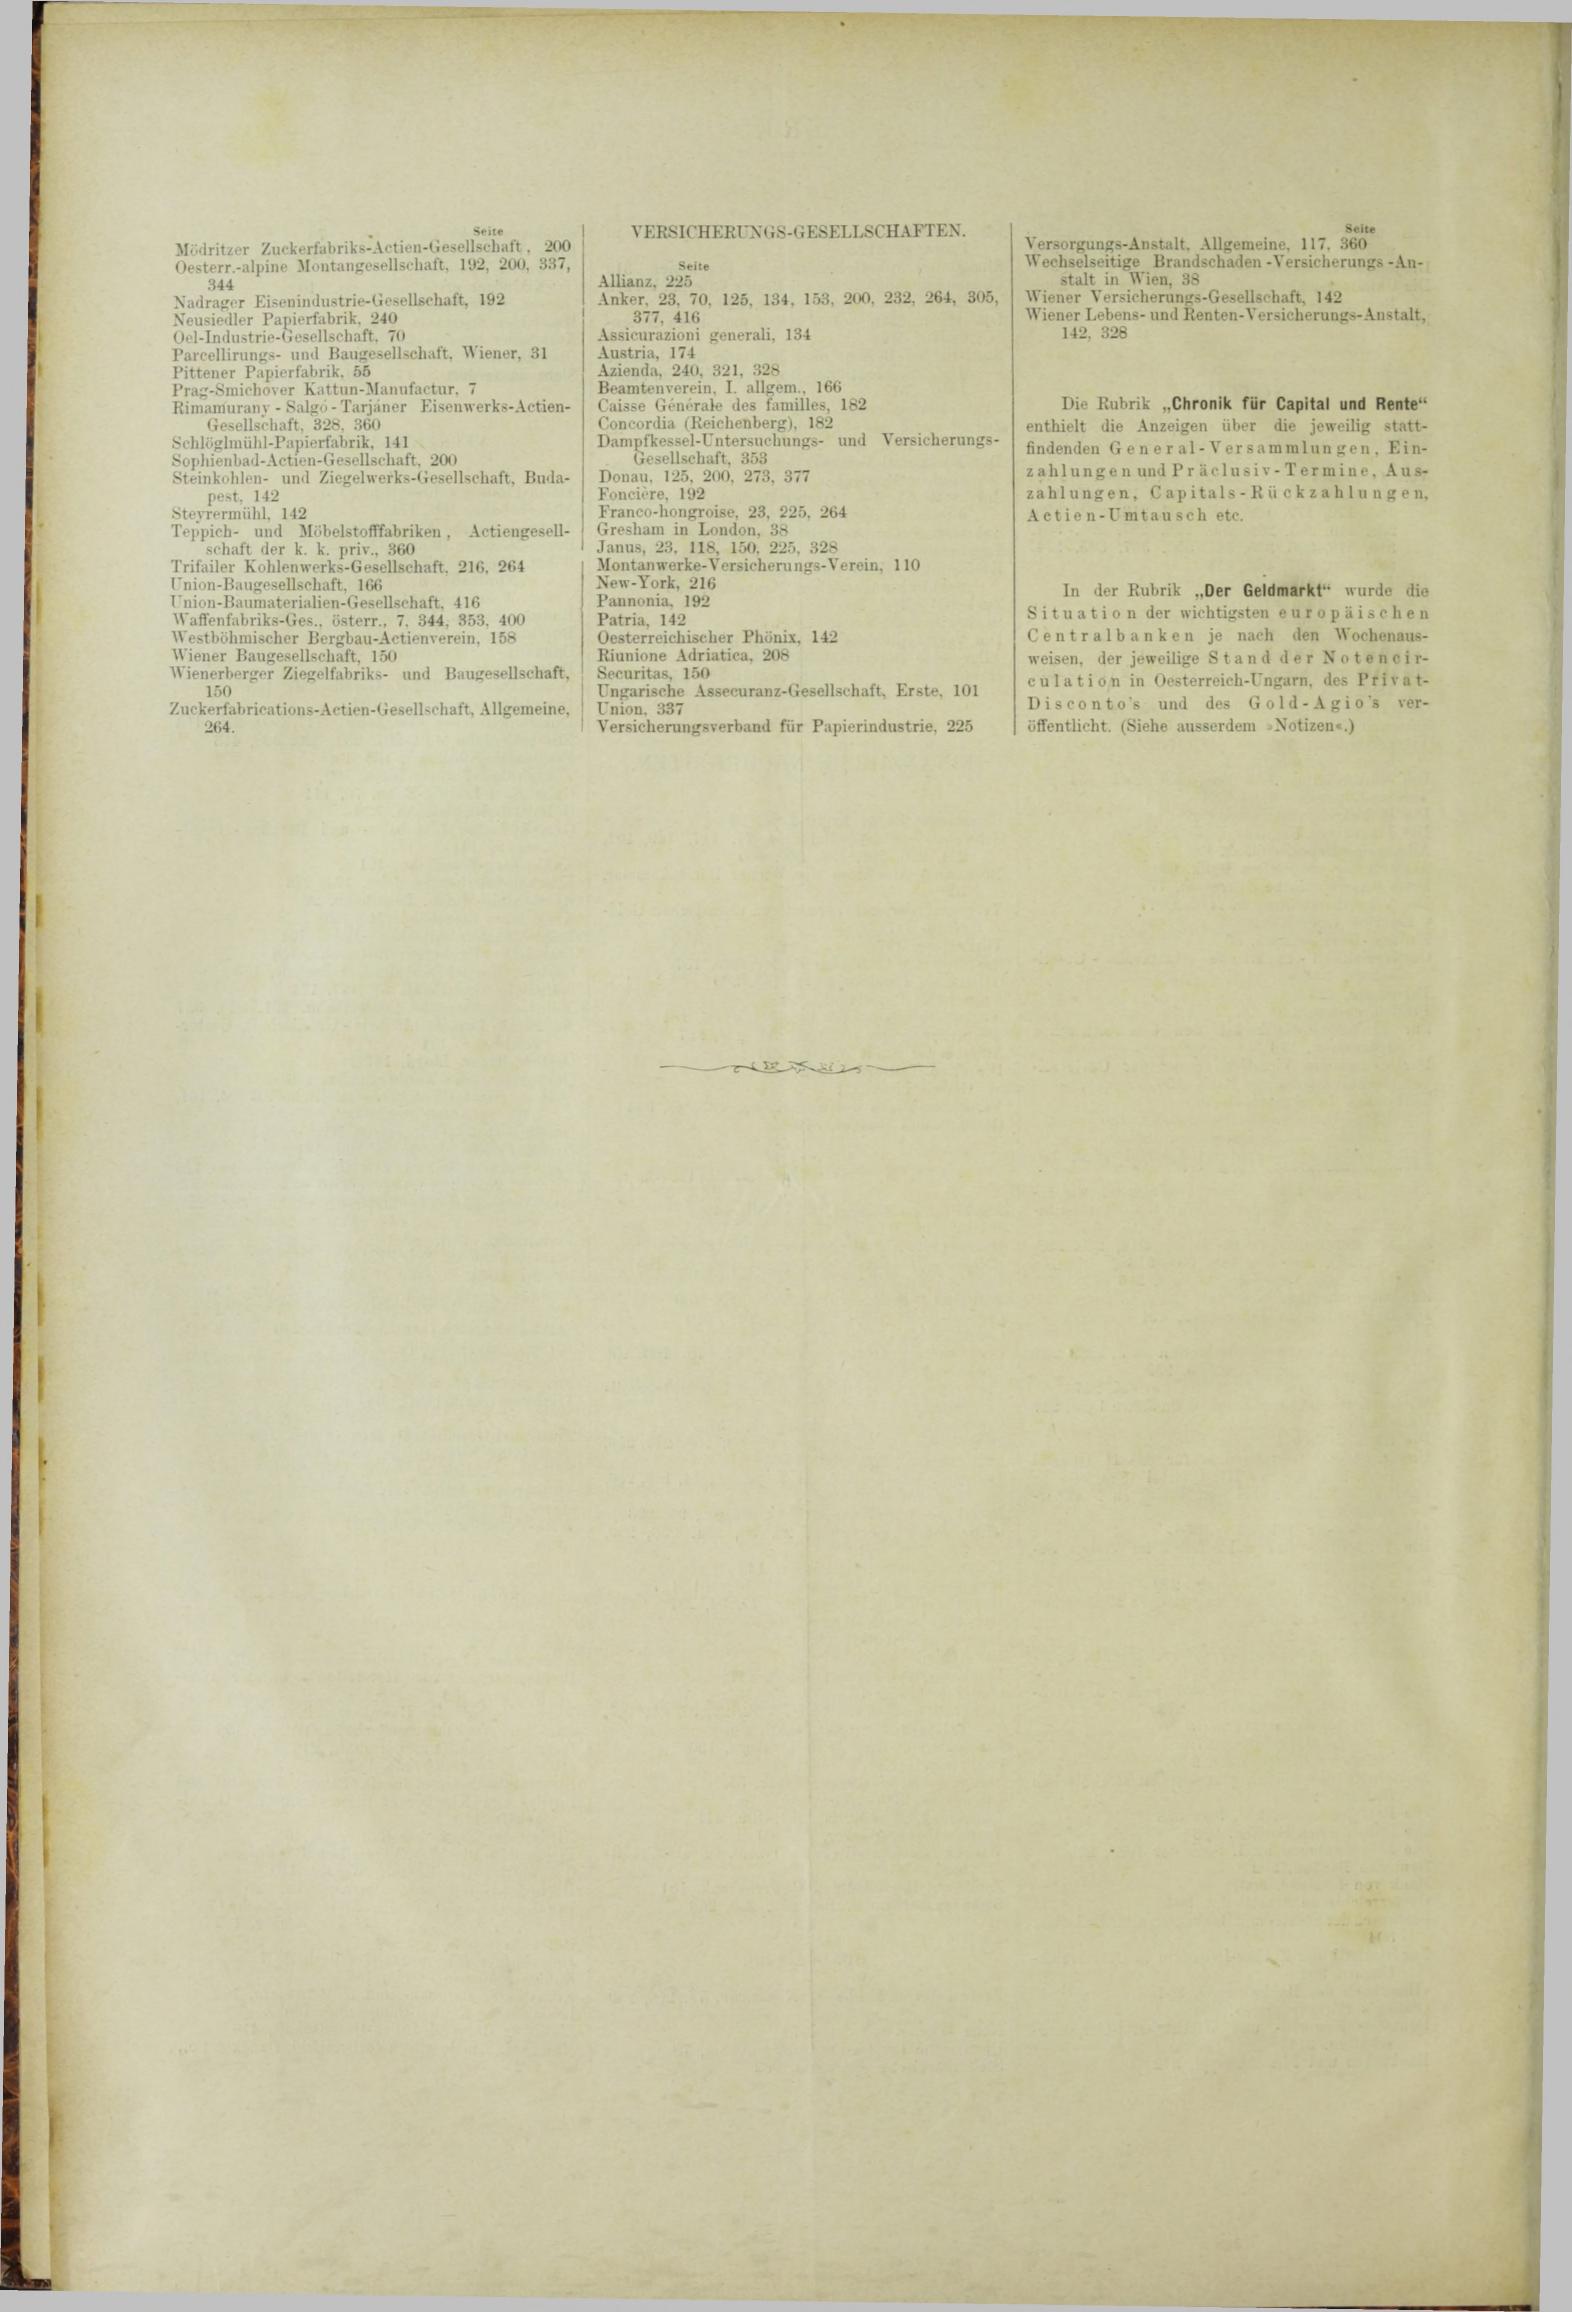 Der Tresor 12.04.1883 - Seite 12